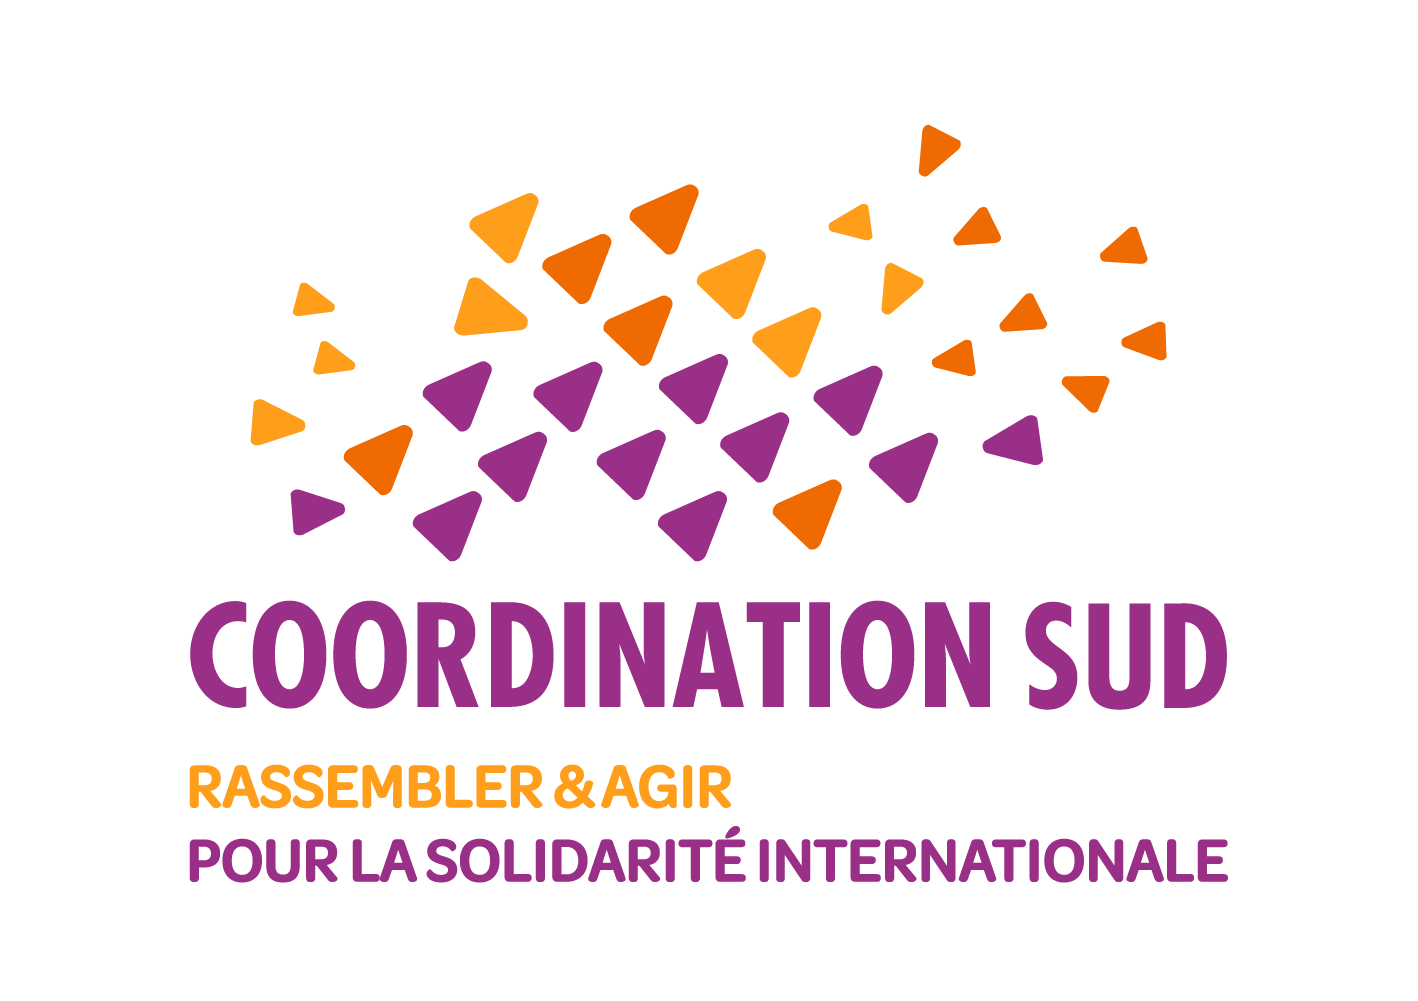 Une nouvelle vitrine pour Coordination SUD et ses membres, la coordination nationale des ONG françaises de solidarité internationale